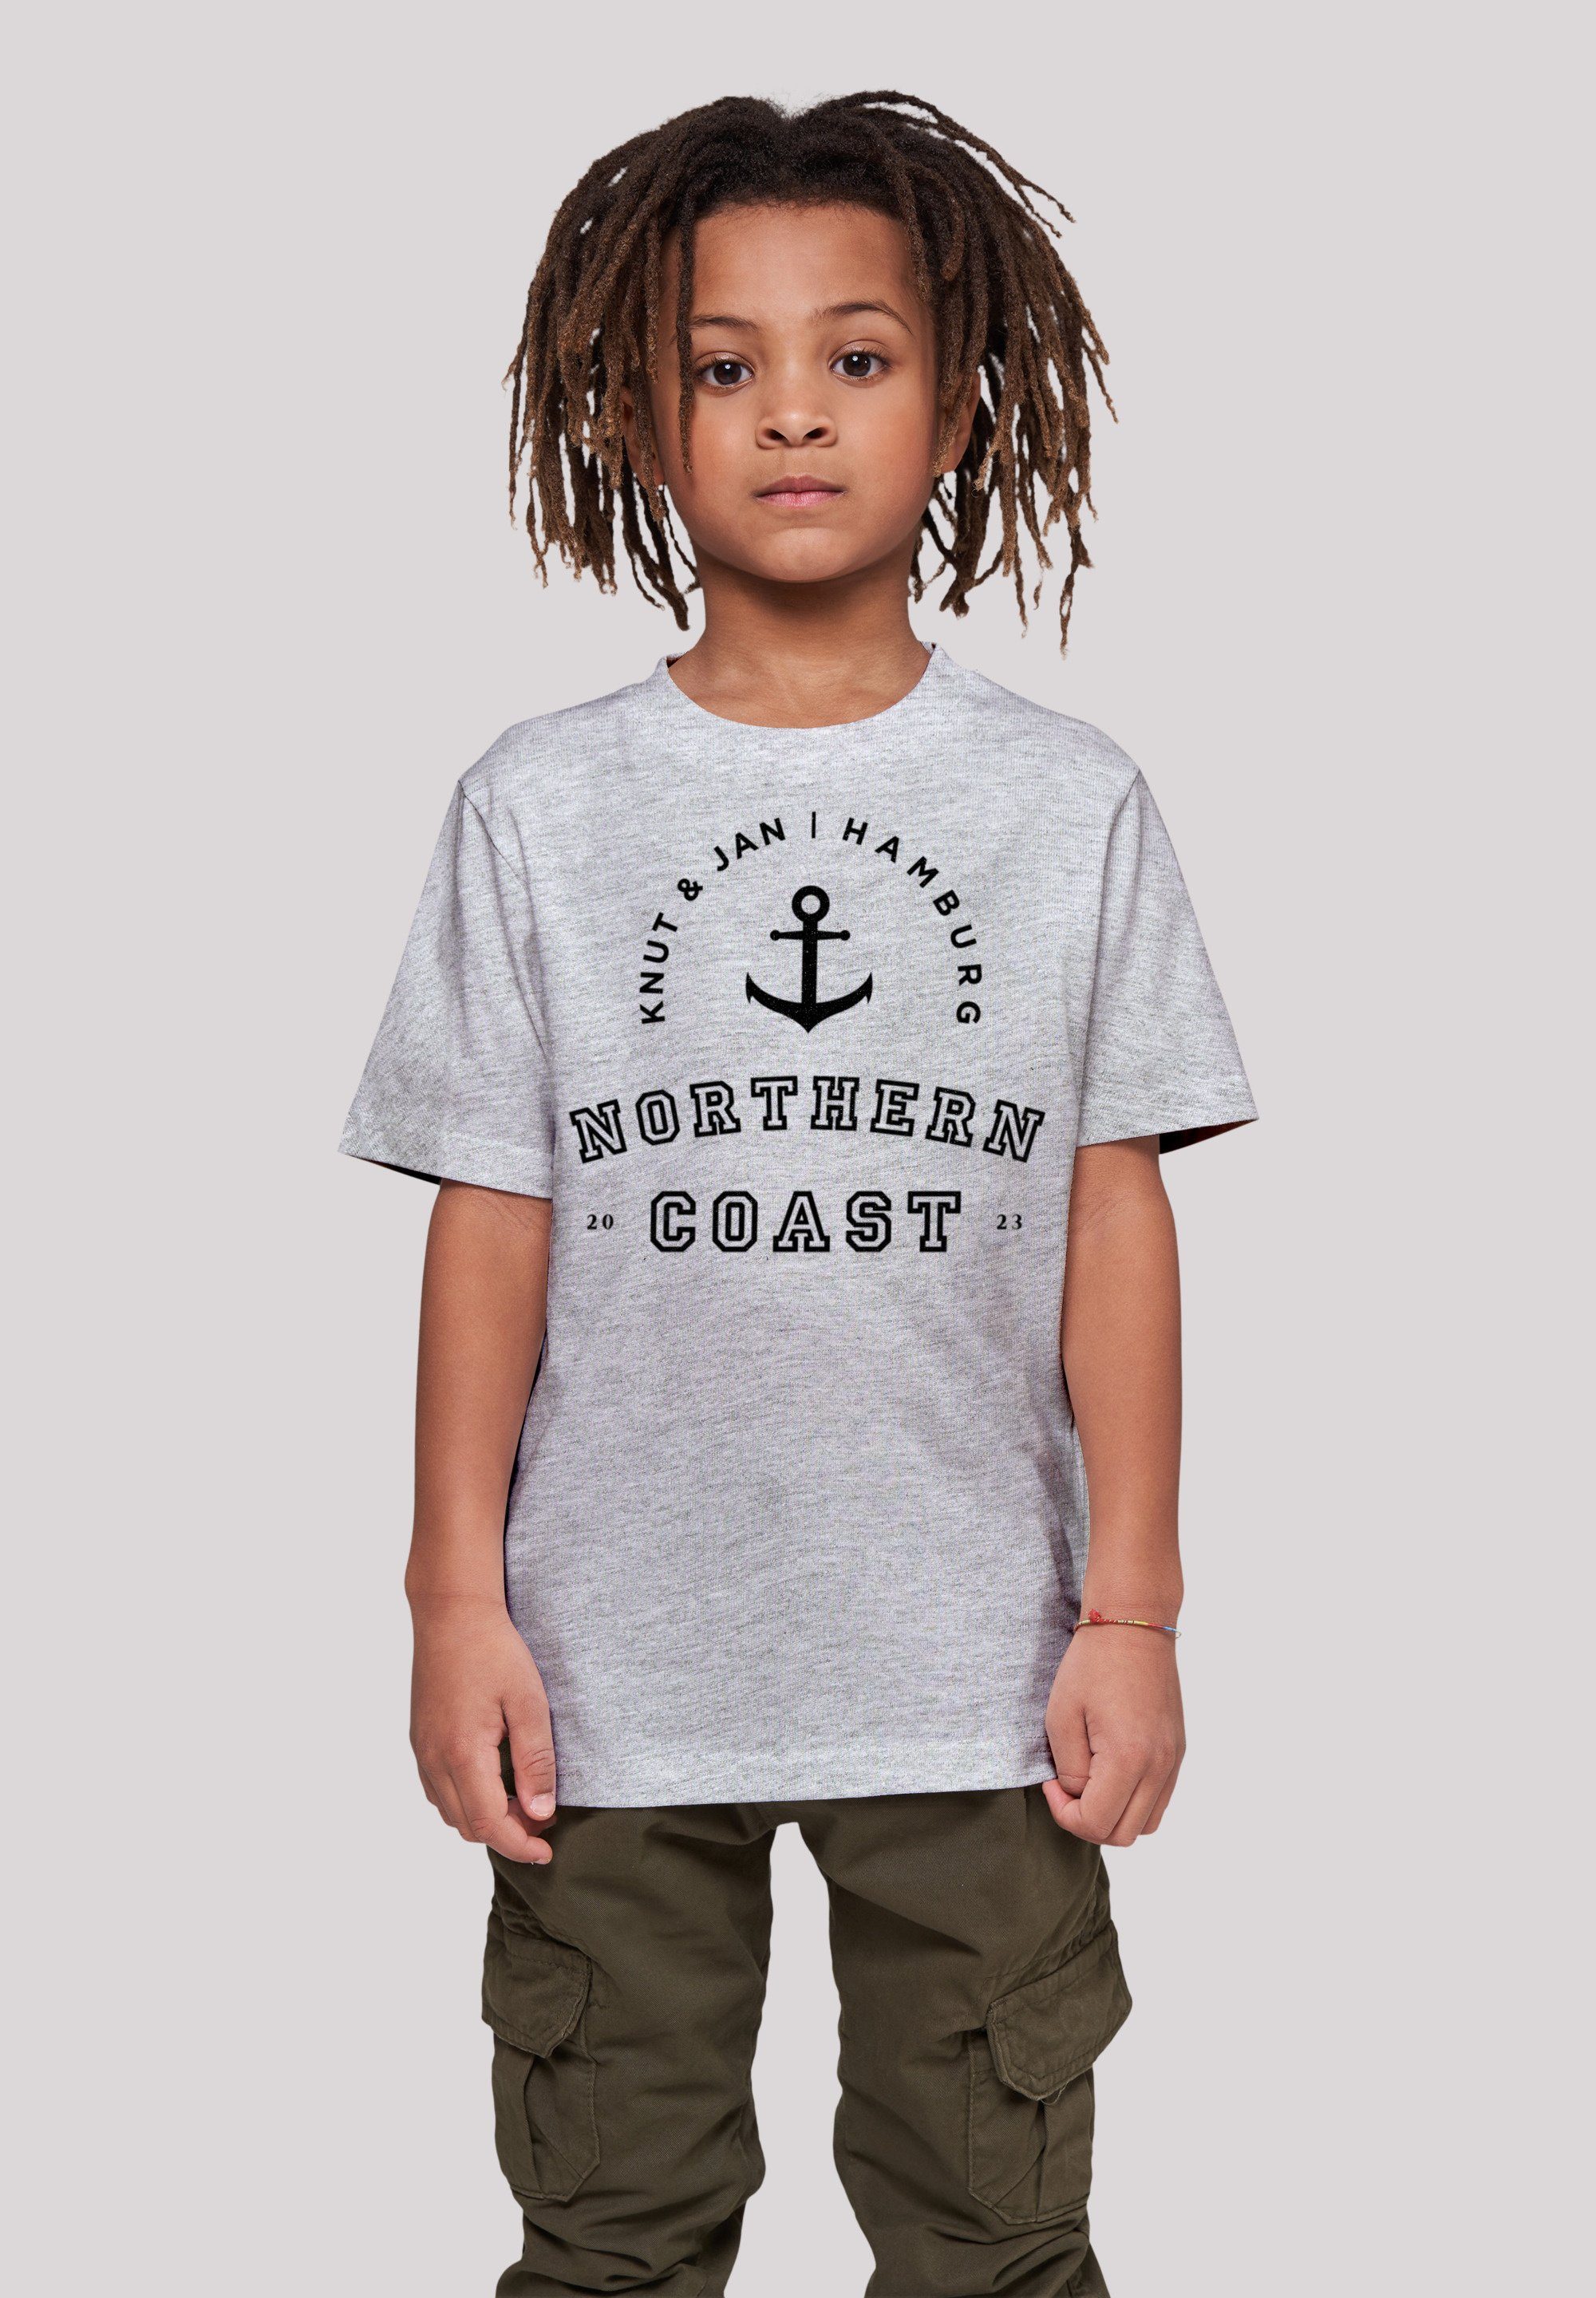 F4NT4STIC T-Shirt Northern Coast Knut Jan Hamburg Print grey & heather